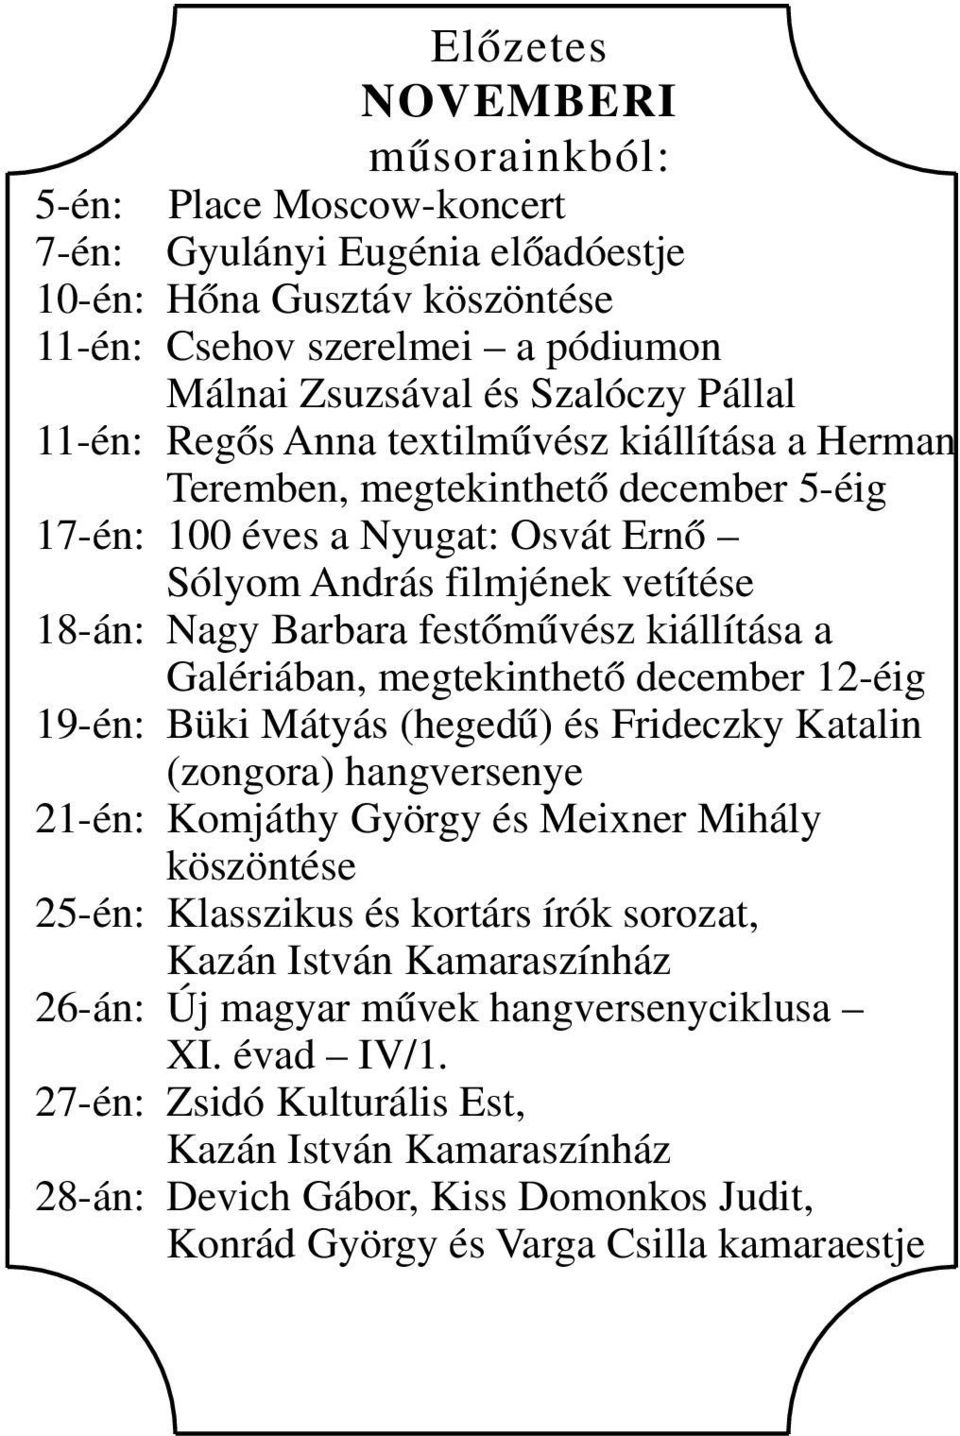 kiállítása a Galériában, megtekinthető december 12-éig 19-én: Büki Mátyás (hegedű) és Frideczky Katalin (zongora) hangversenye 21-én: Komjáthy György és Meixner Mihály köszöntése 25-én: Klasszikus és